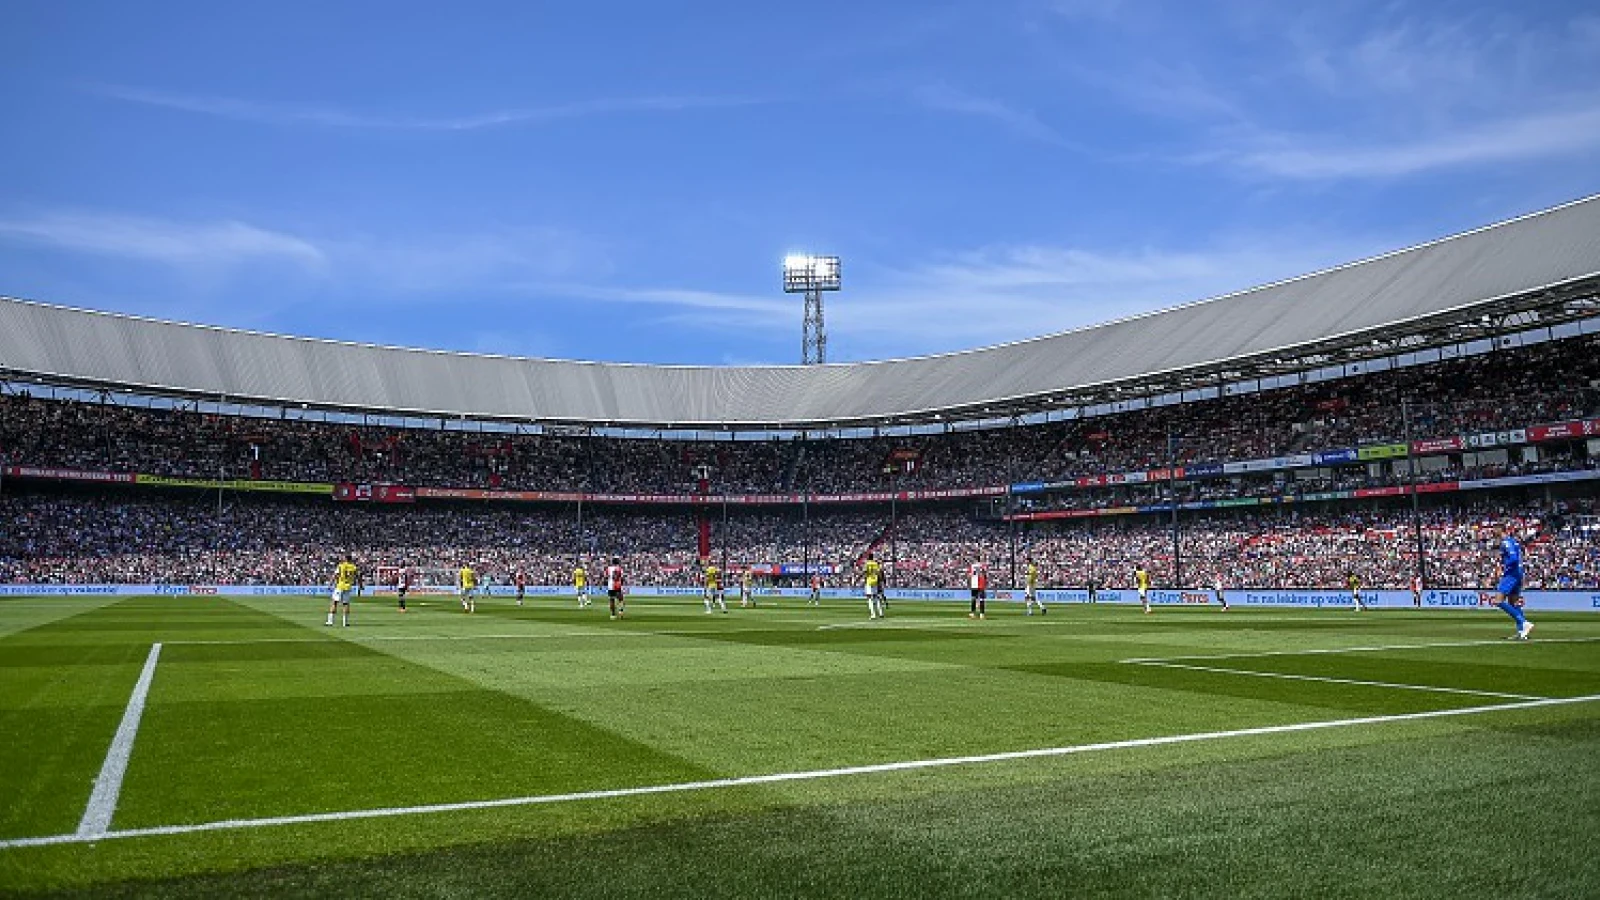 DEFINITIEF | Competitieprogramma Eredivisie officieel vastgesteld